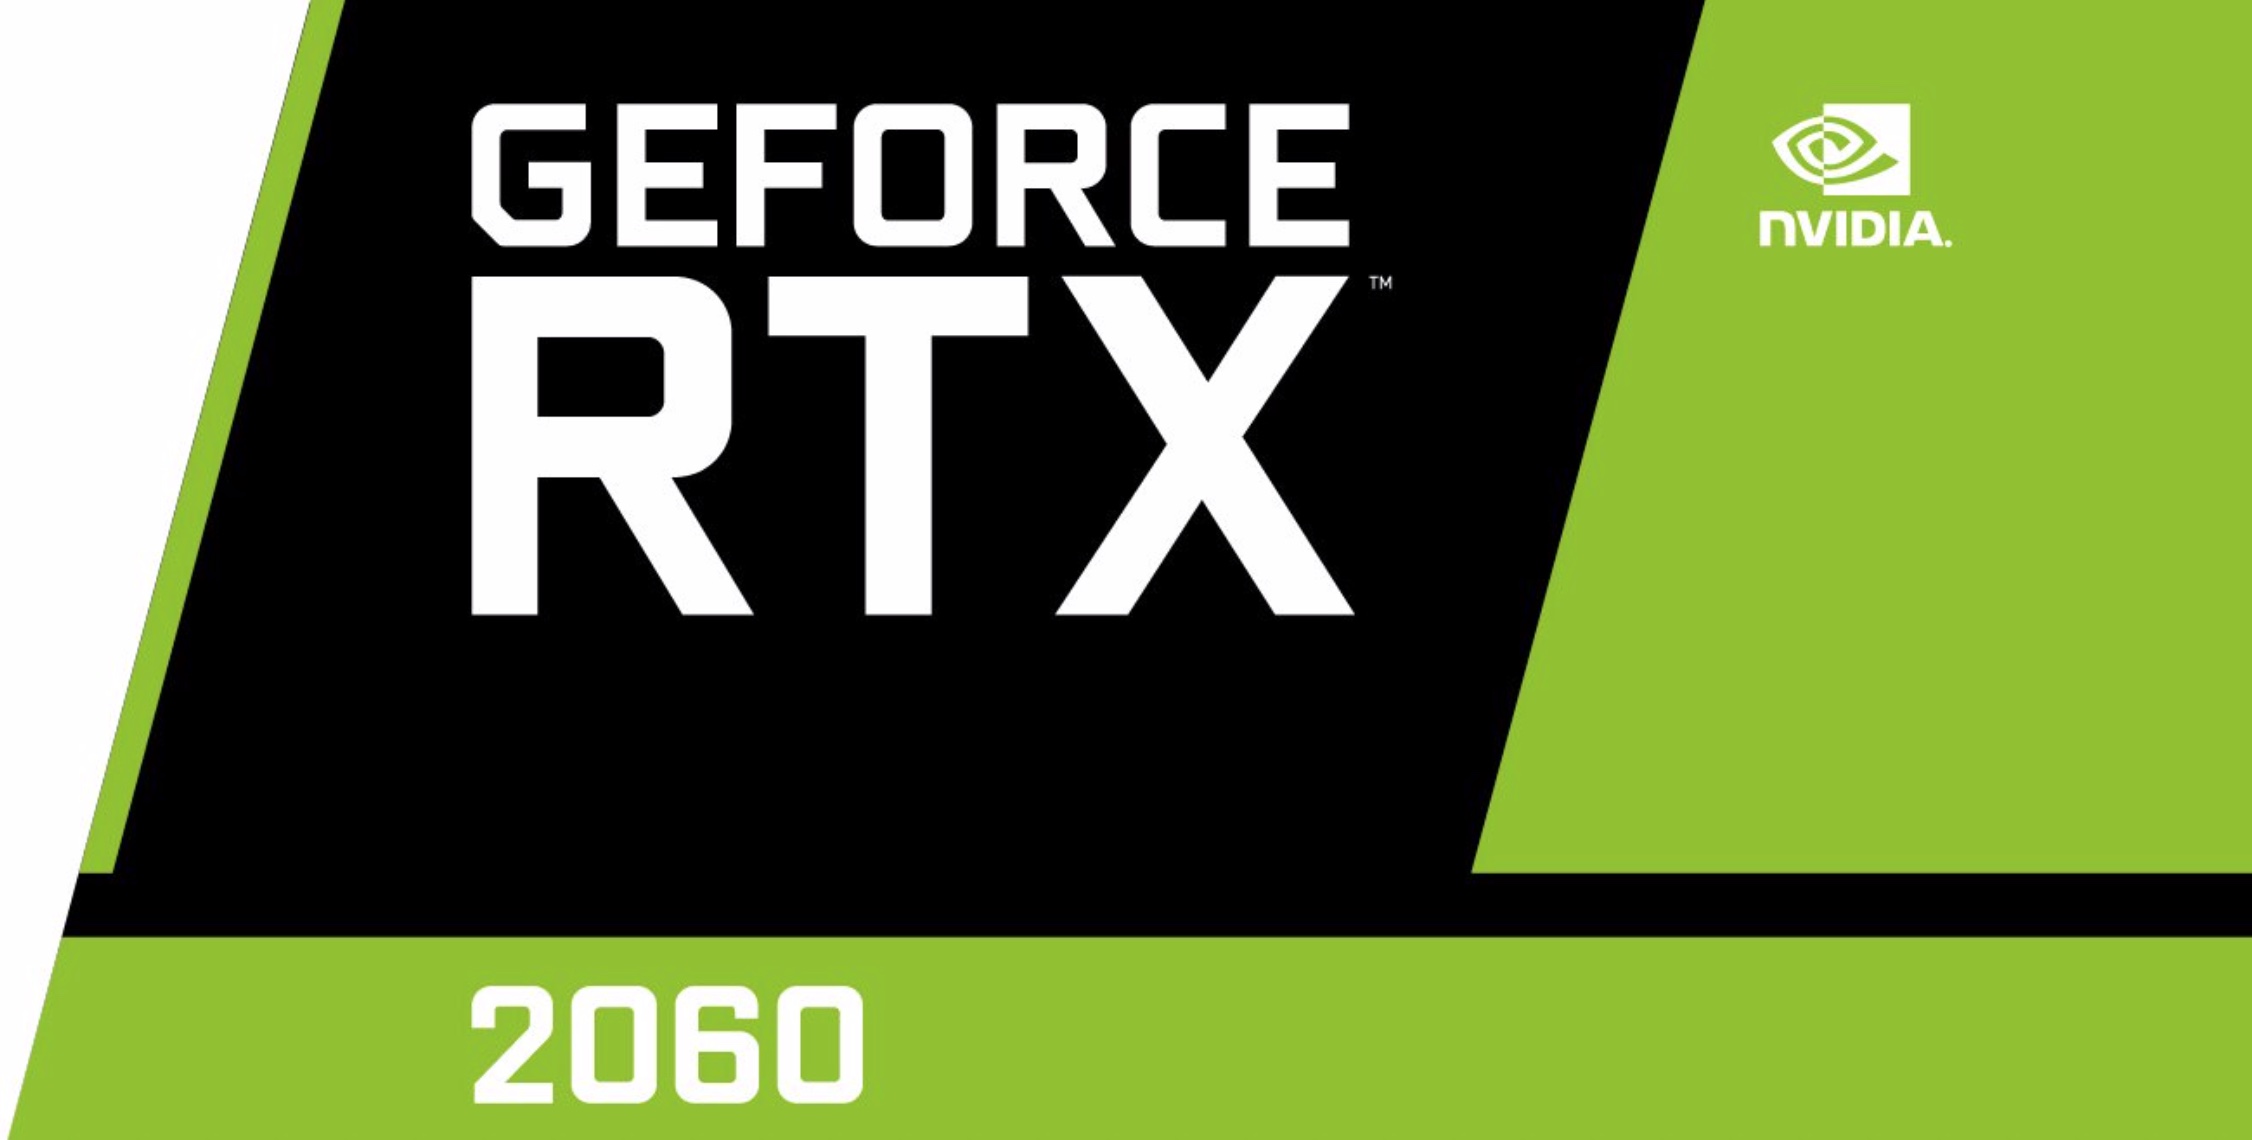 Rumor: NVIDIA GeForce RTX 2060 Founders Edition costará 349 dólares estadounidenses;  Vendrá con una copia gratuita de Battlefield V o Anthem